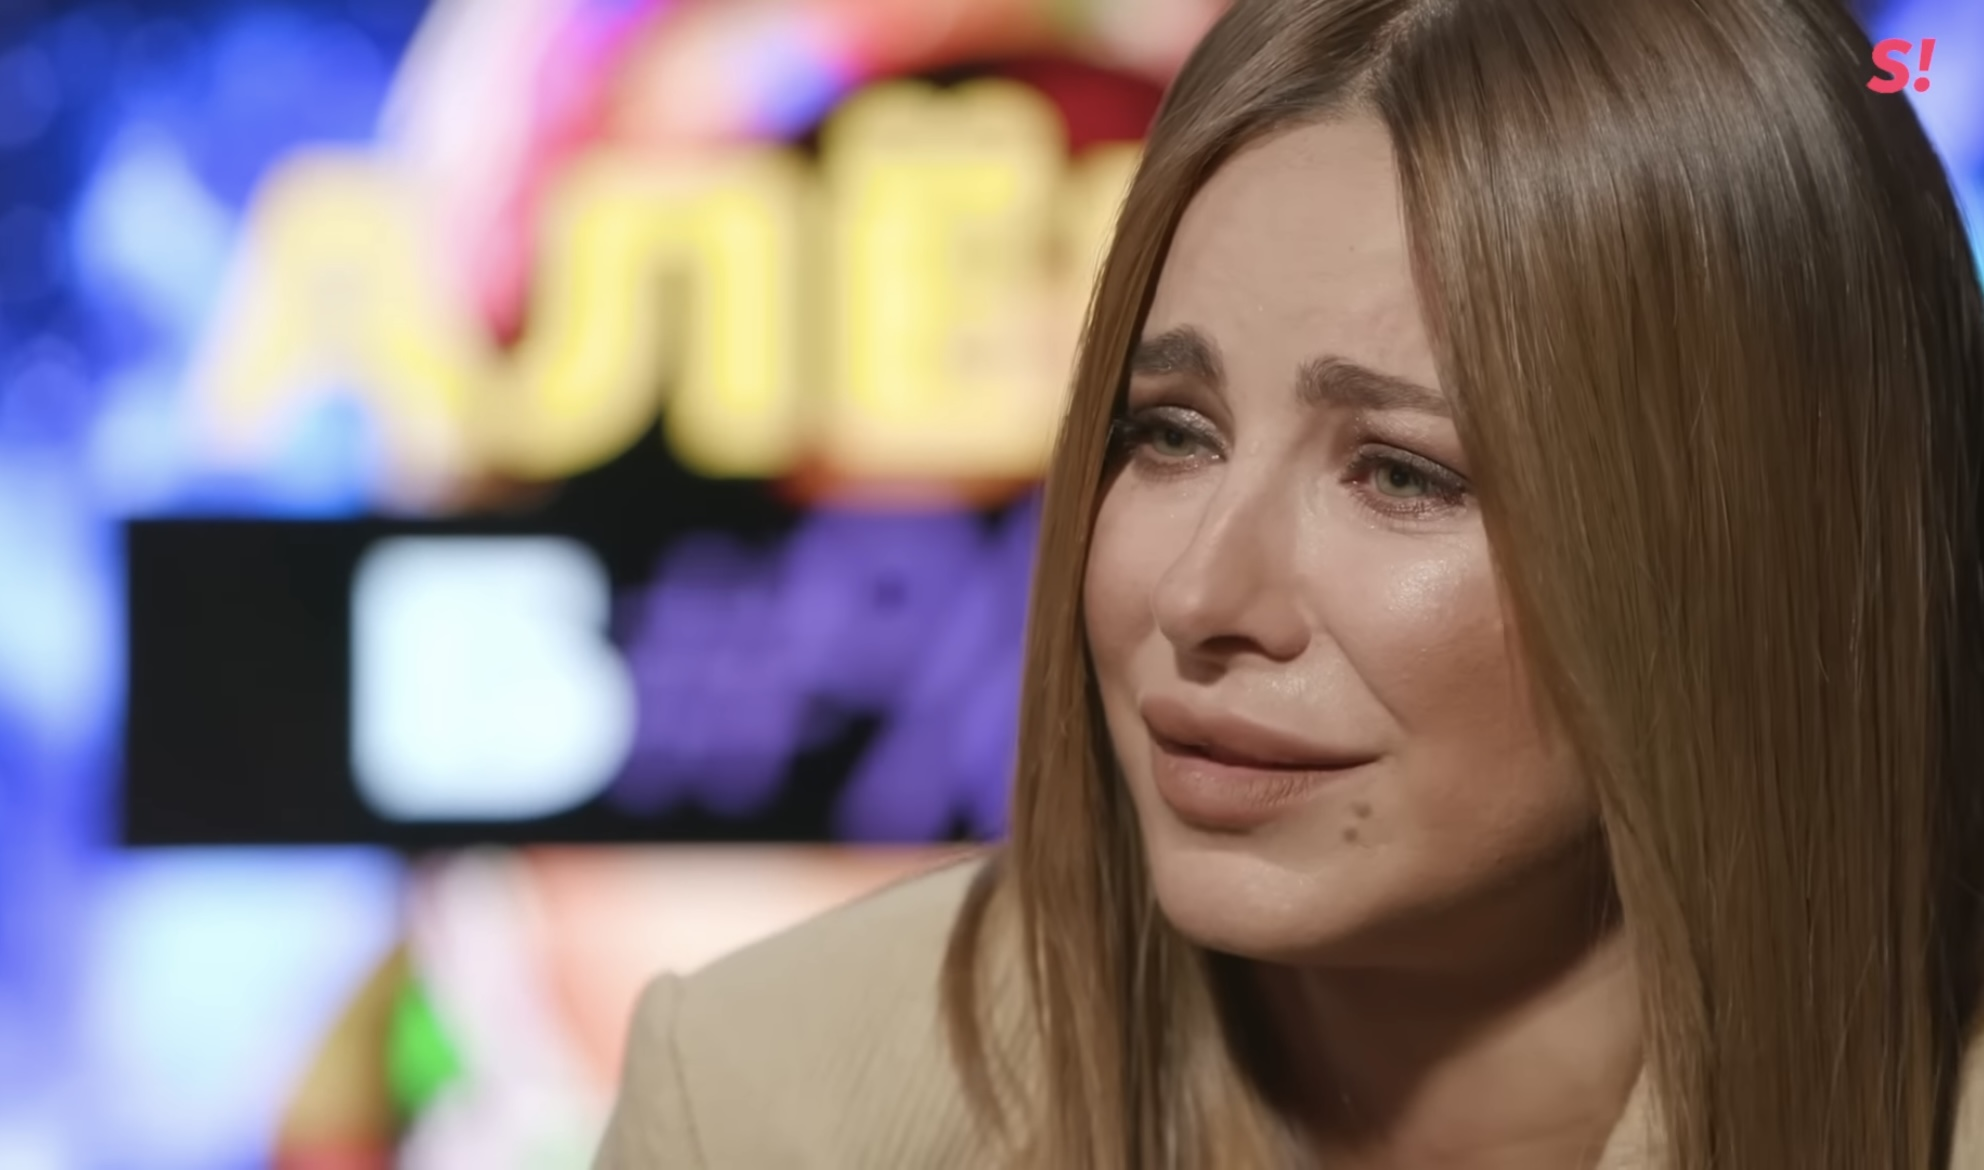 "Виправдання": акторка українського дубляжу насмішила новою пародією на ганебне інтерв'ю Ані Лорак. Відео